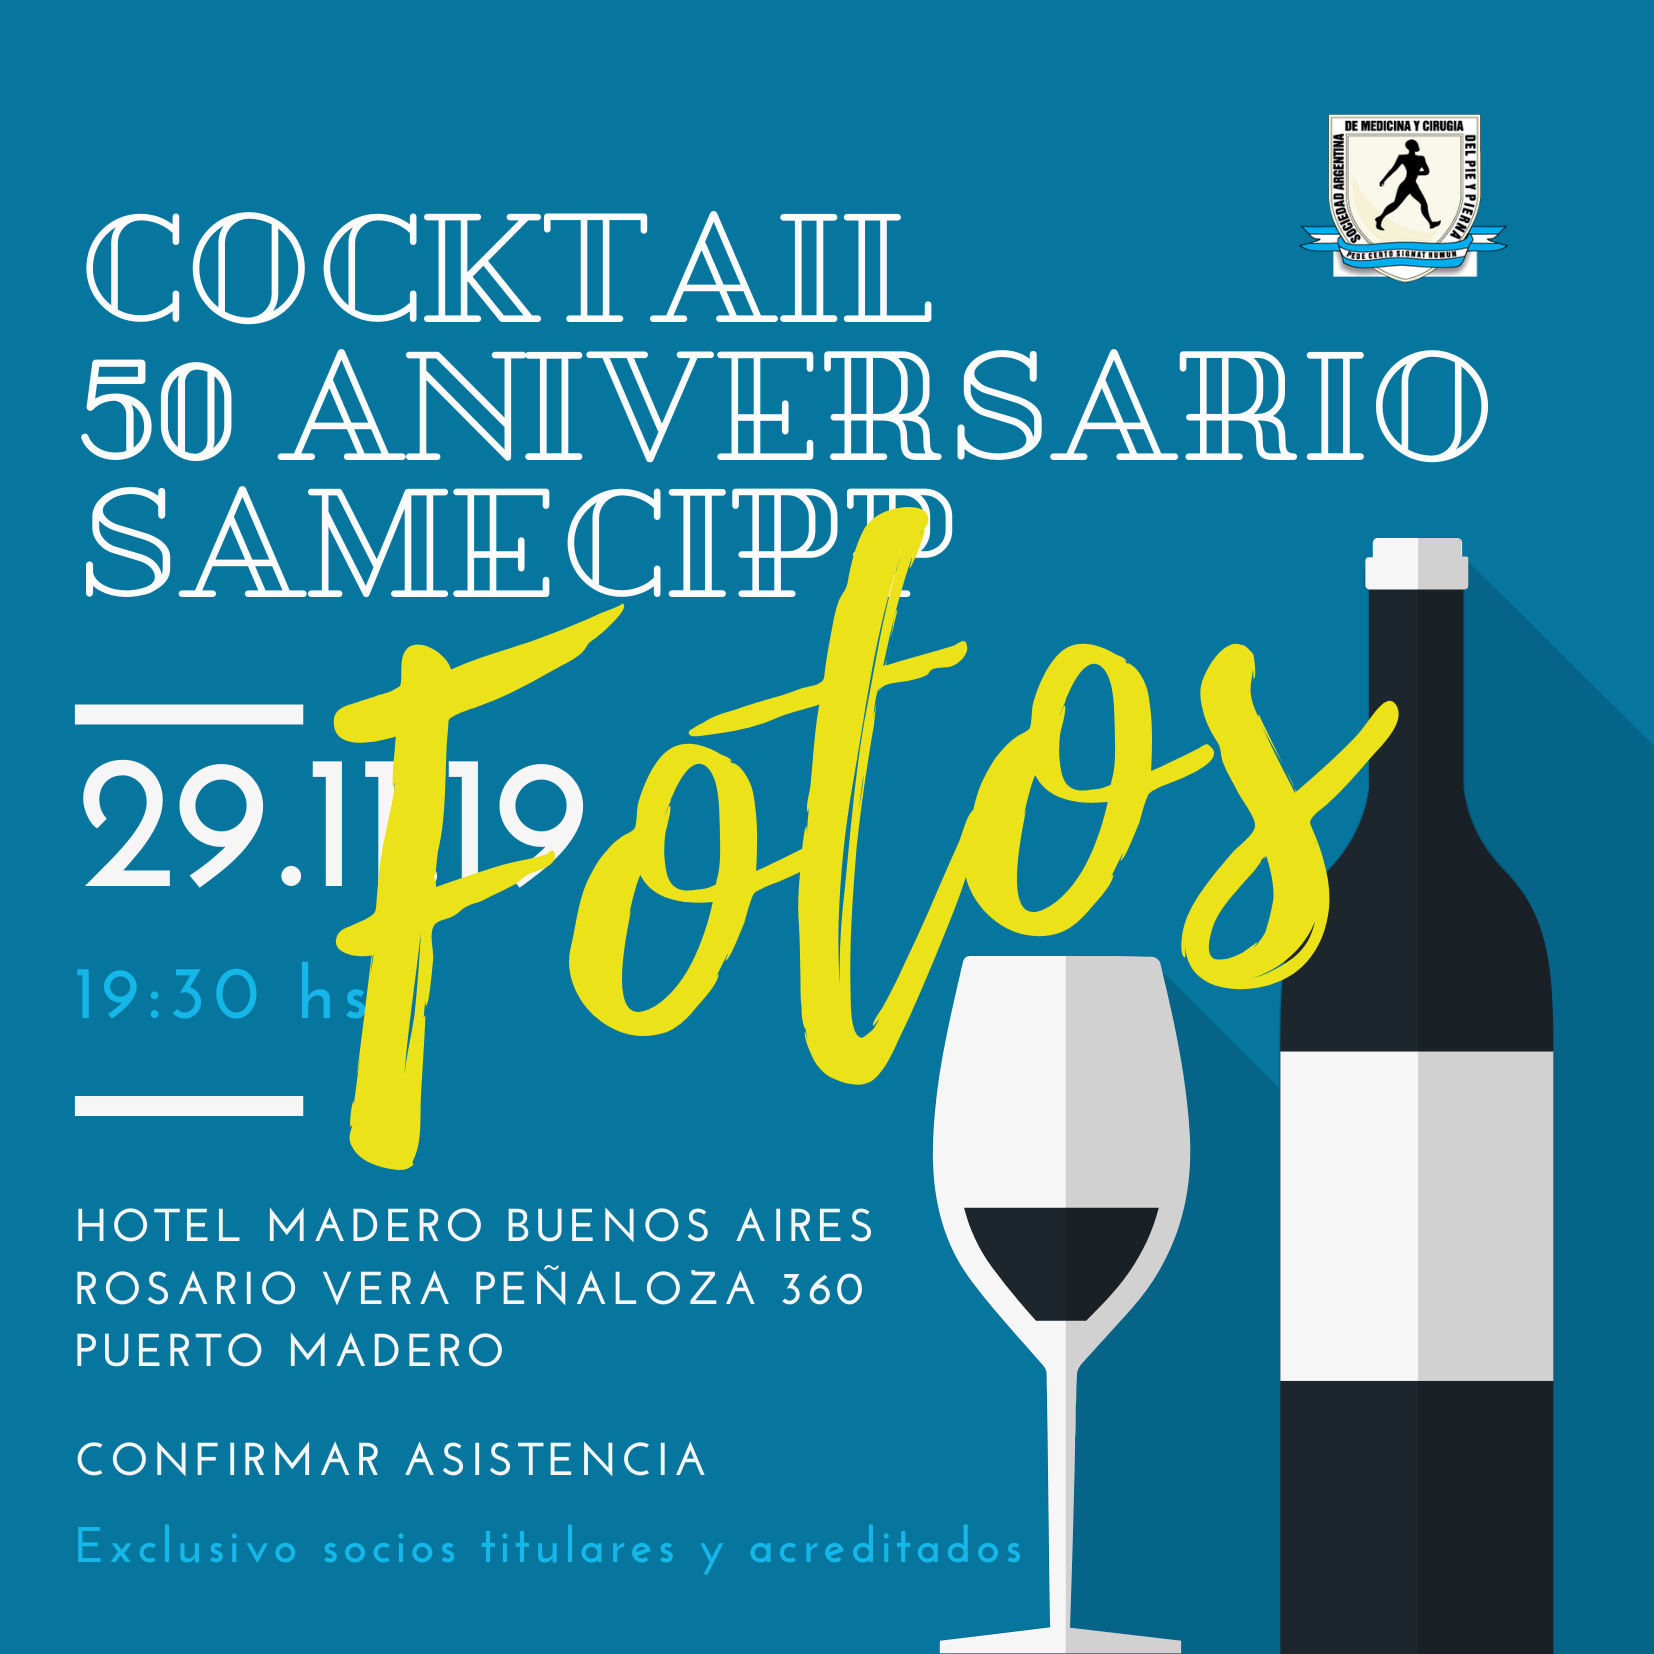 Fotos del Cocktail 50 años SAMeCiPP